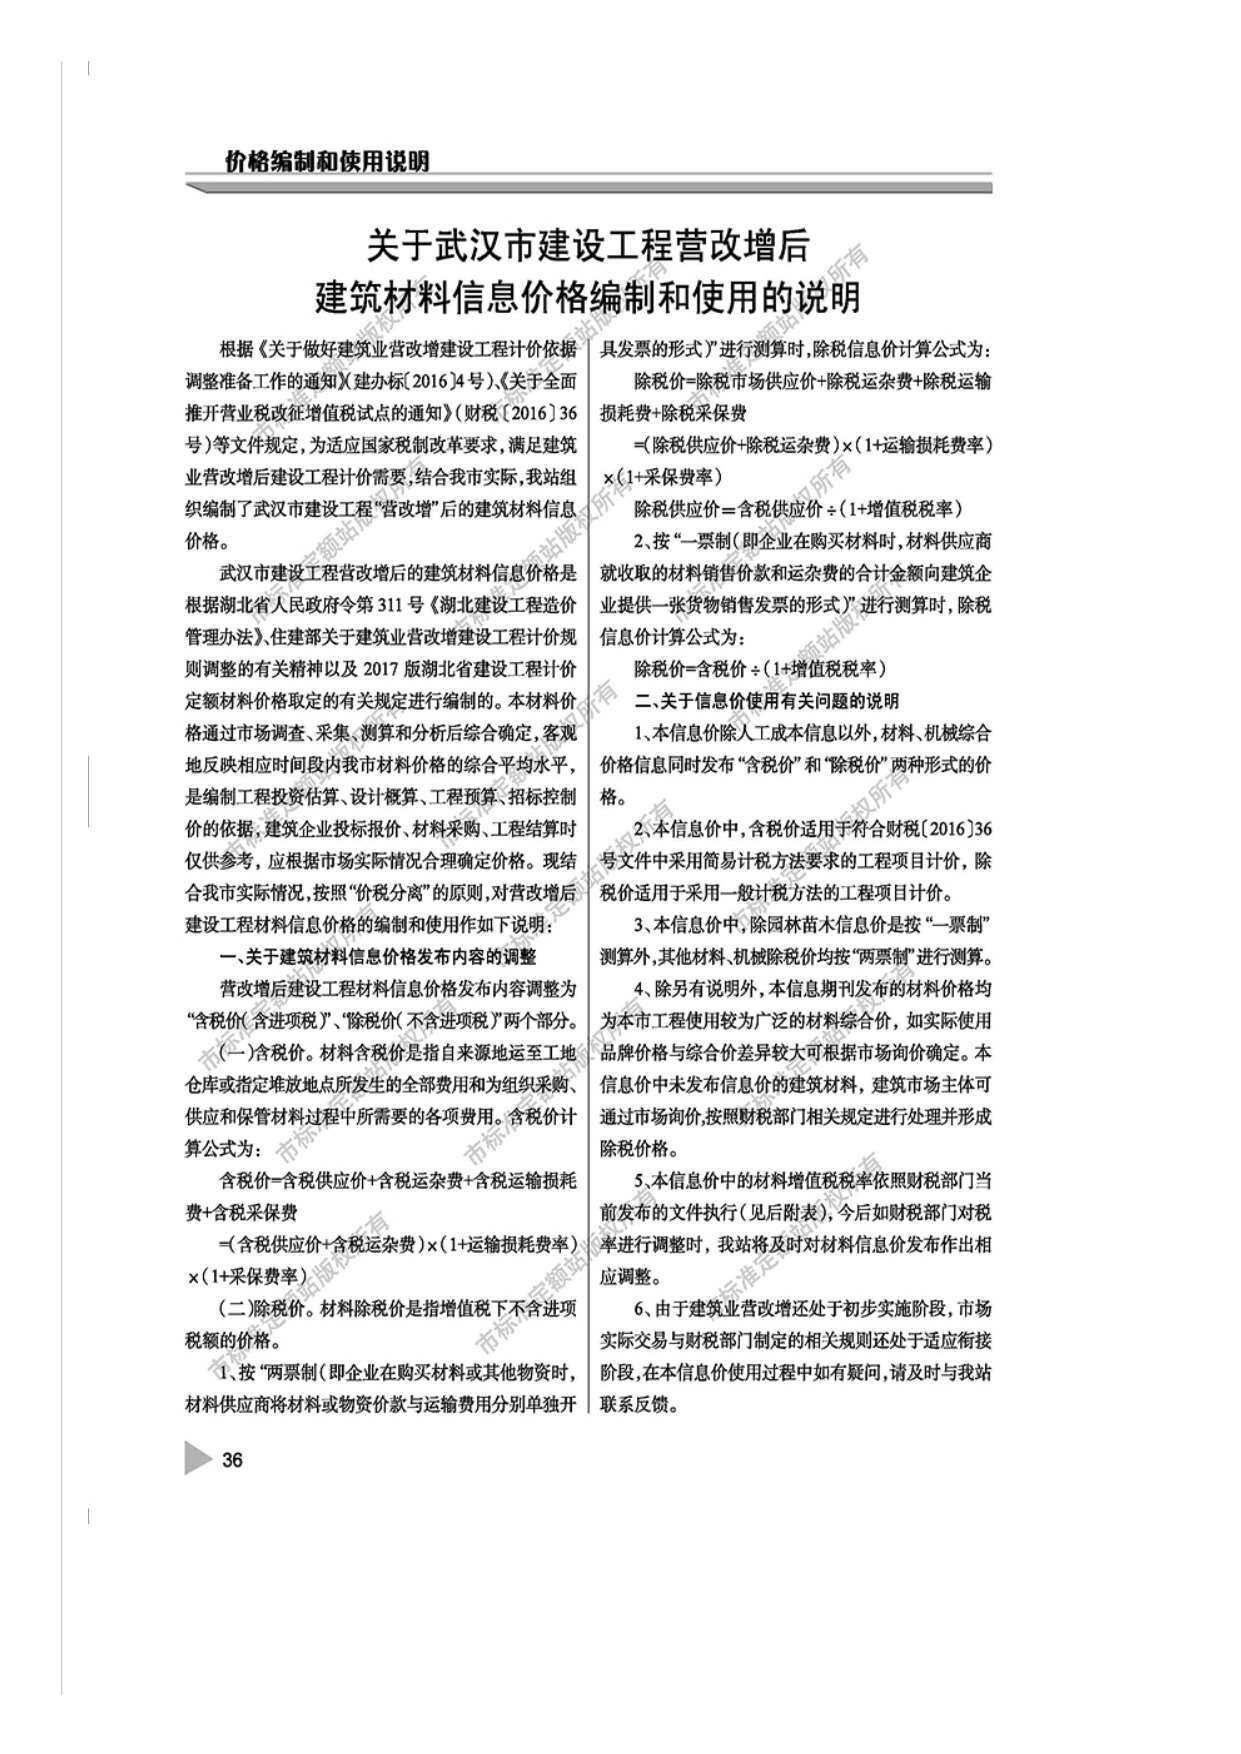 武汉市2018年第12期工程造价信息pdf电子版